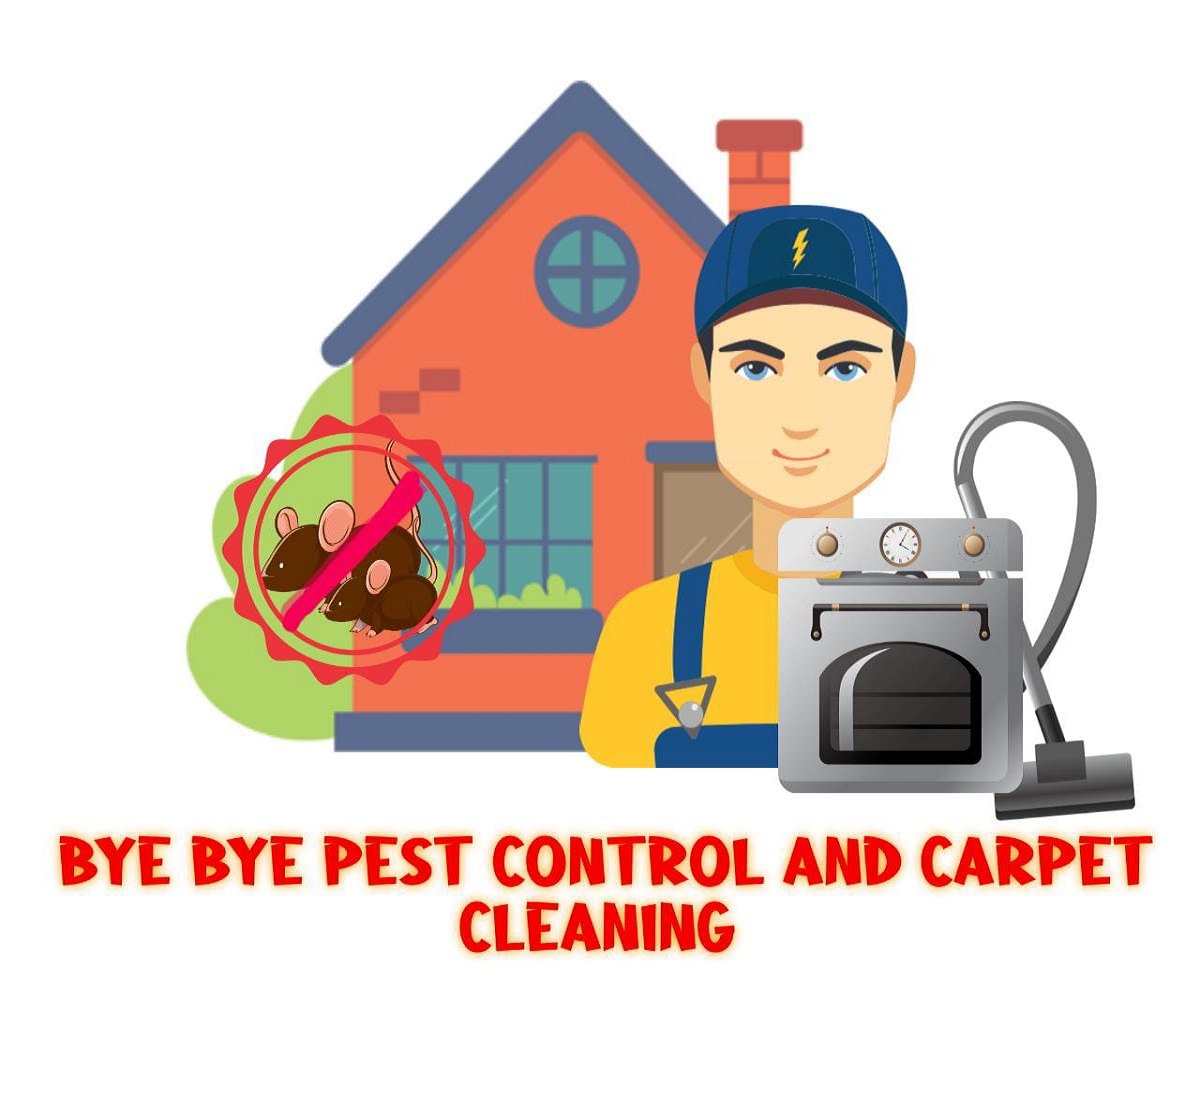 Bye Bye Pest Control